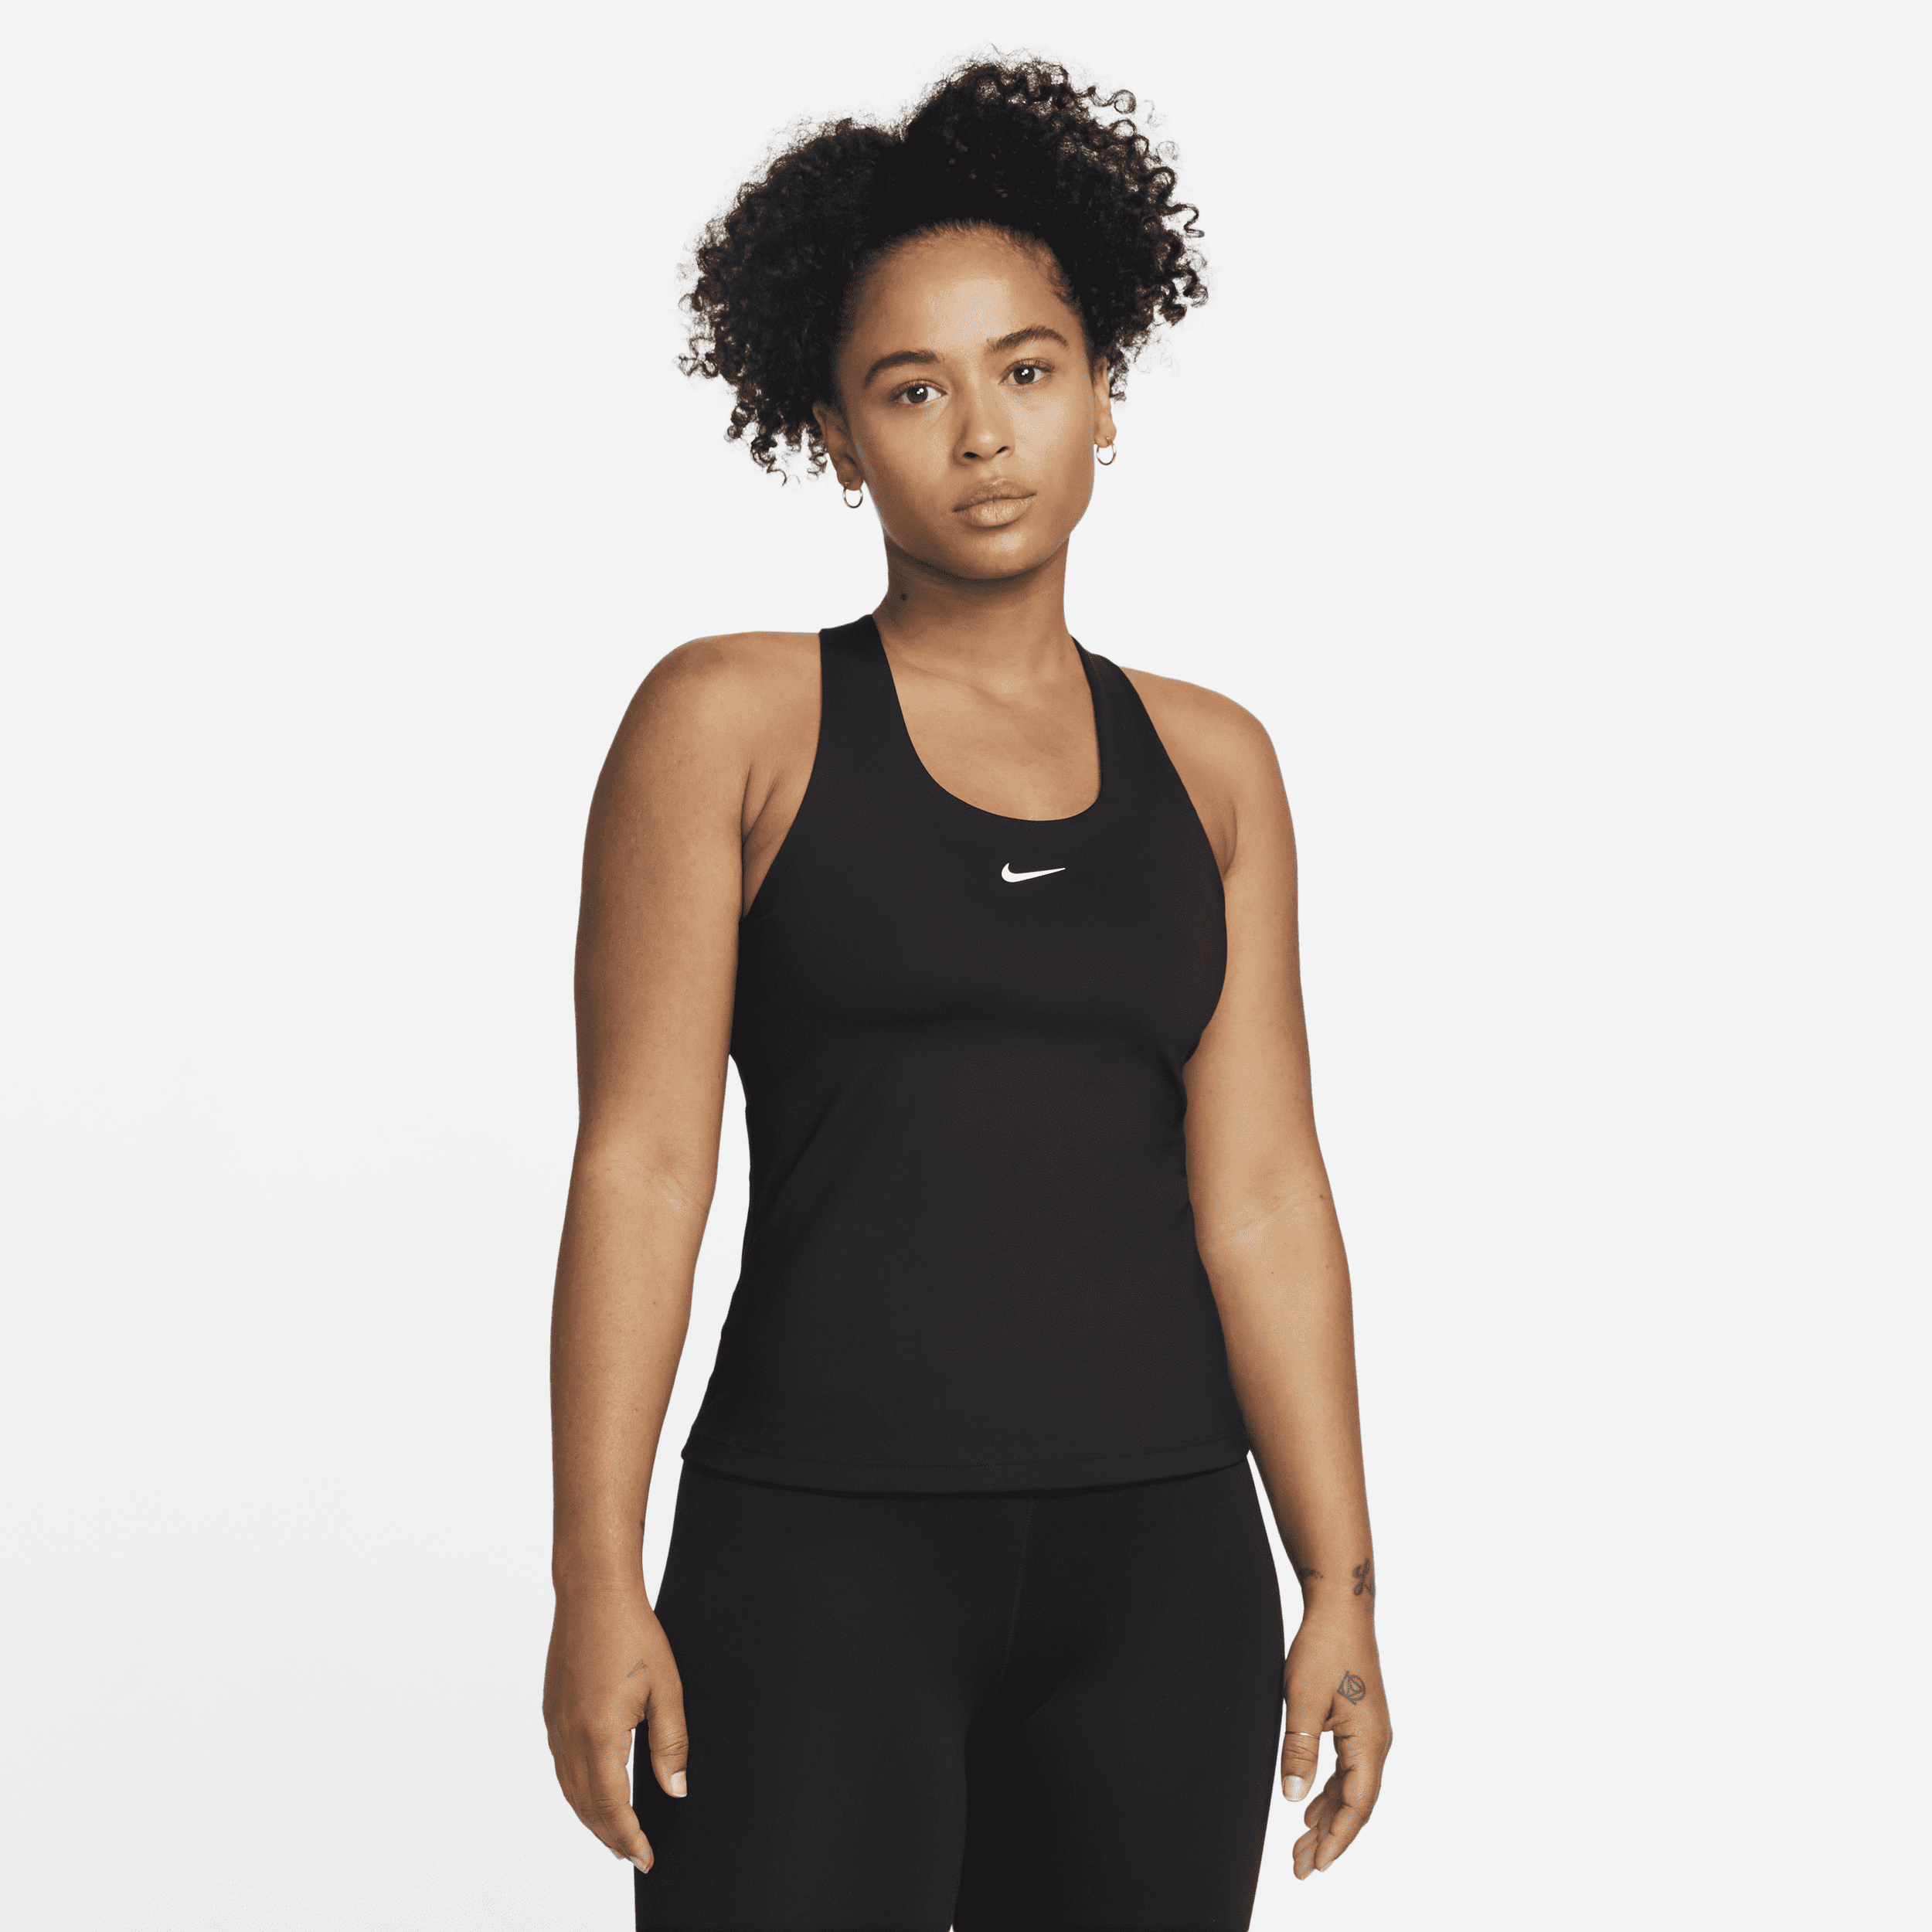 Canotta con bra imbottito a sostegno medio Nike Swoosh – Donna - Nero